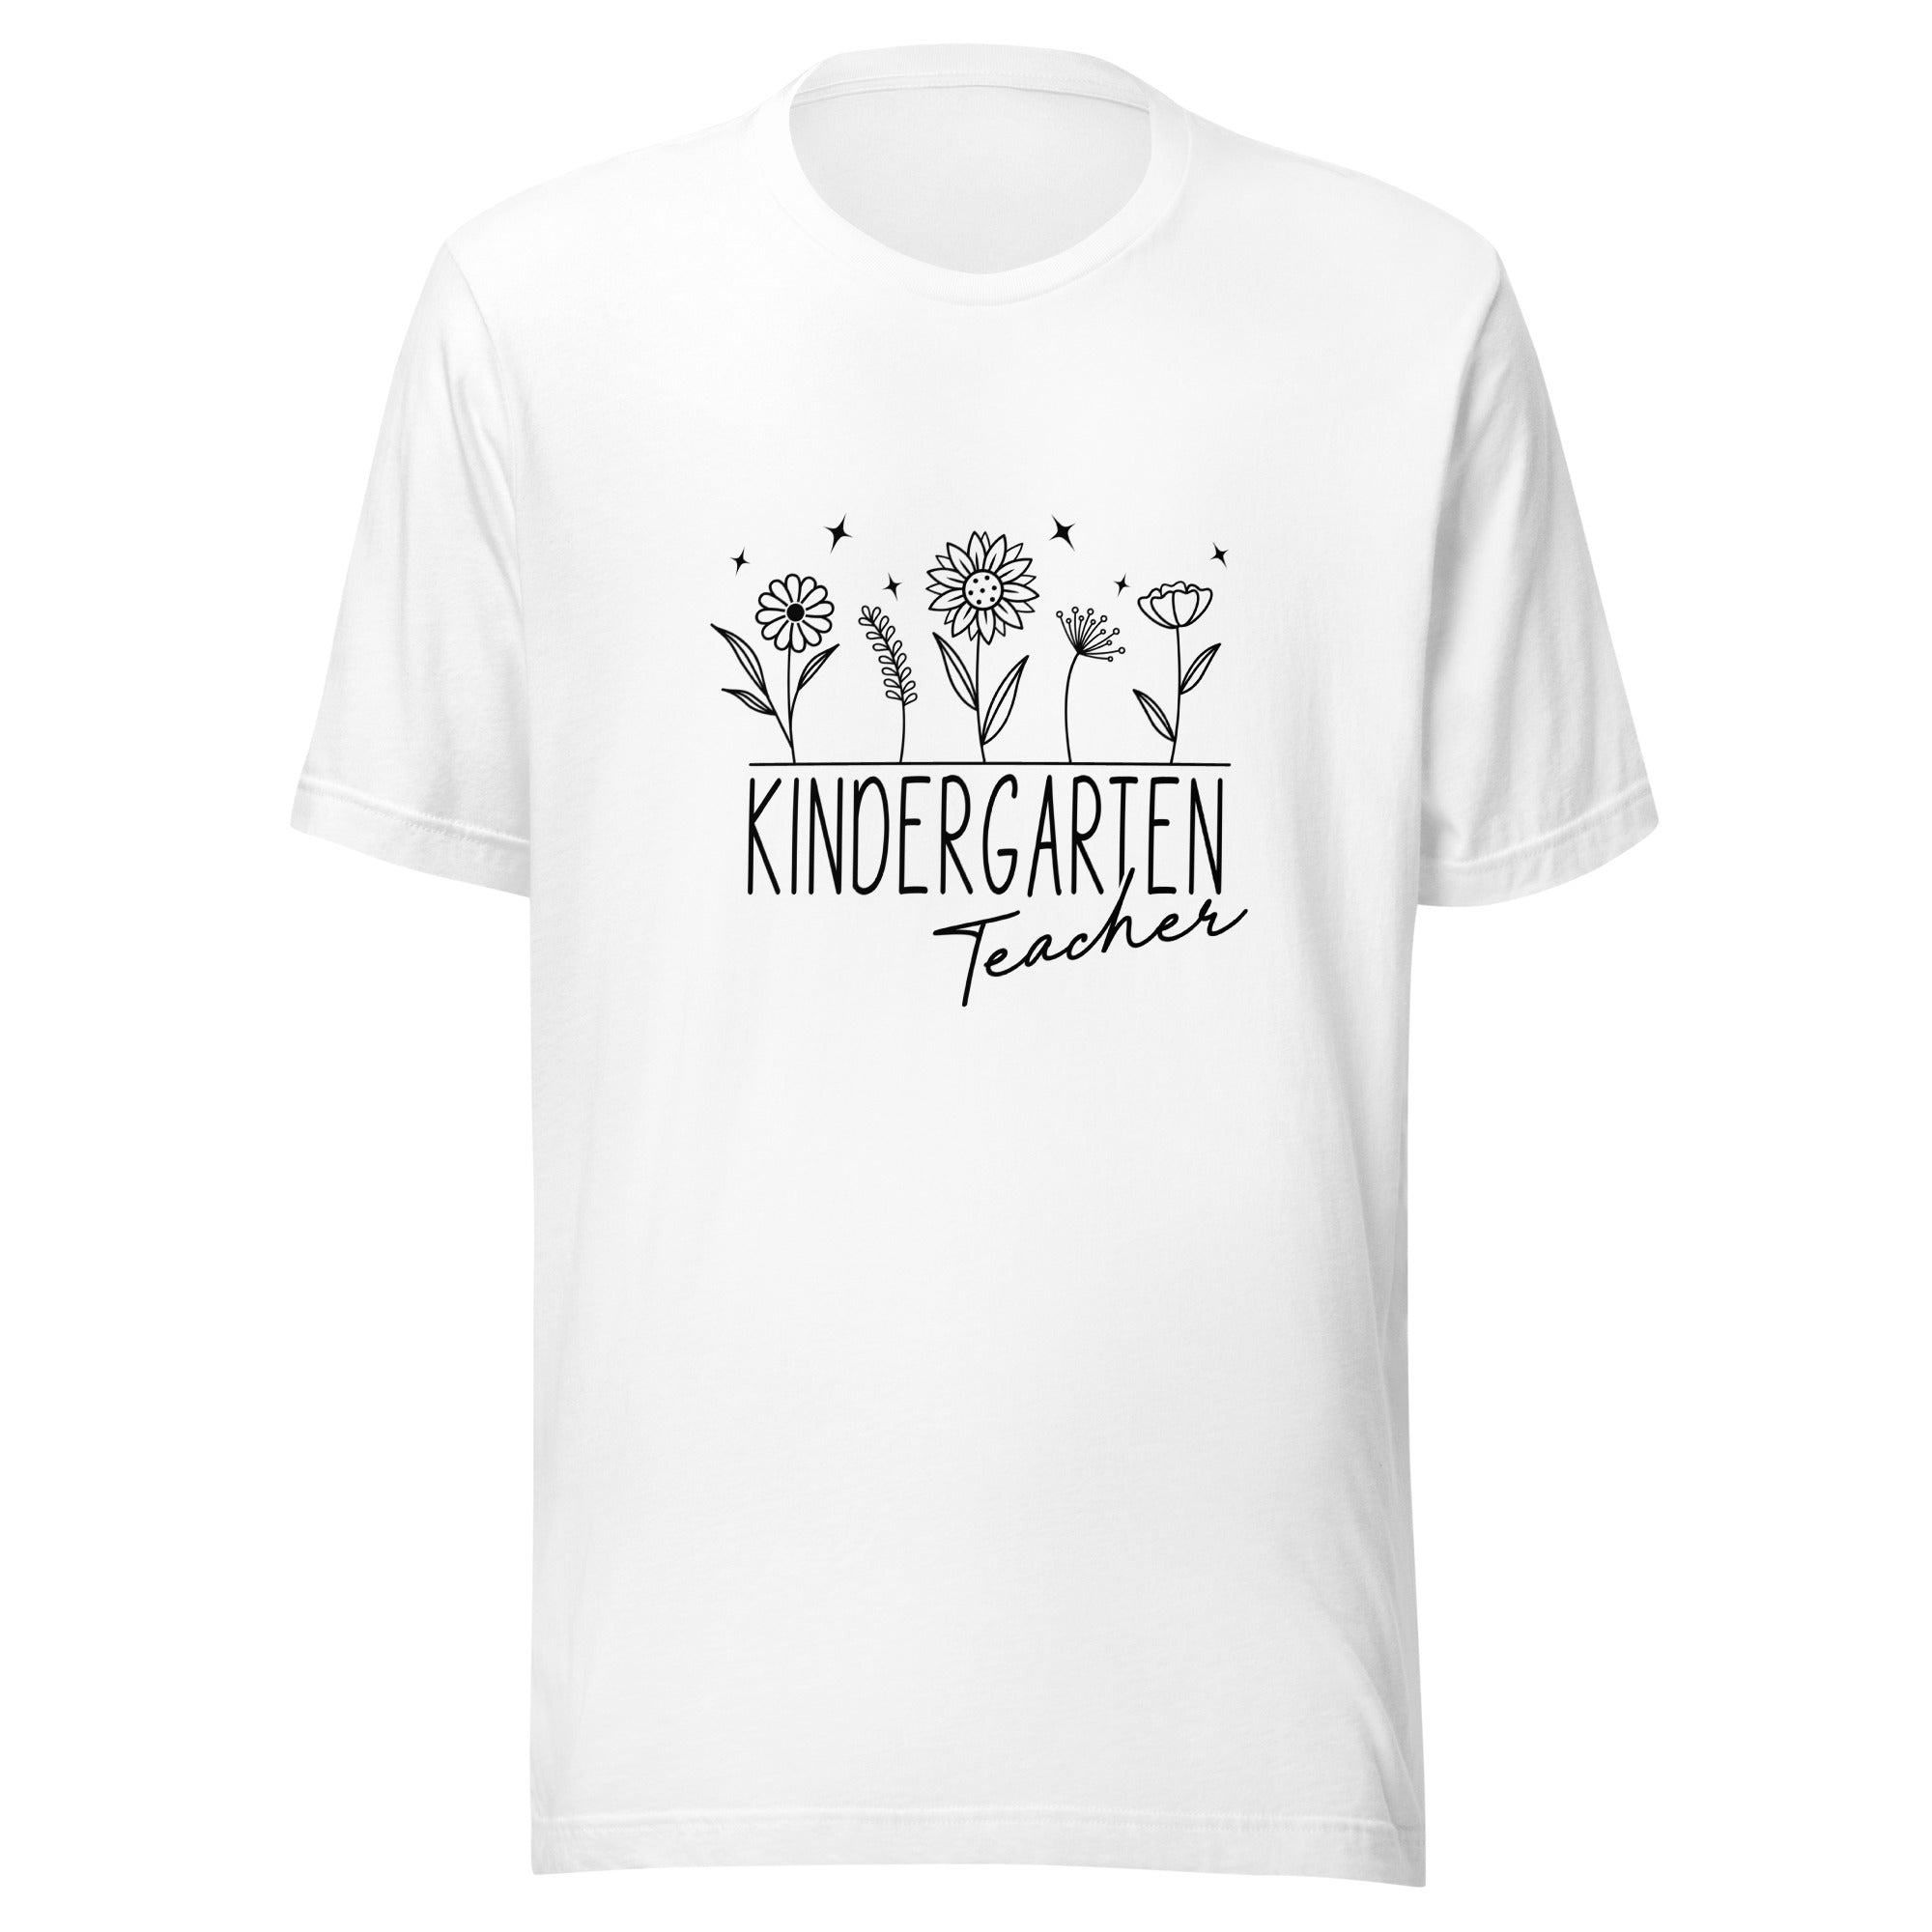 Kindergarten Teacher Unisex t-shirt